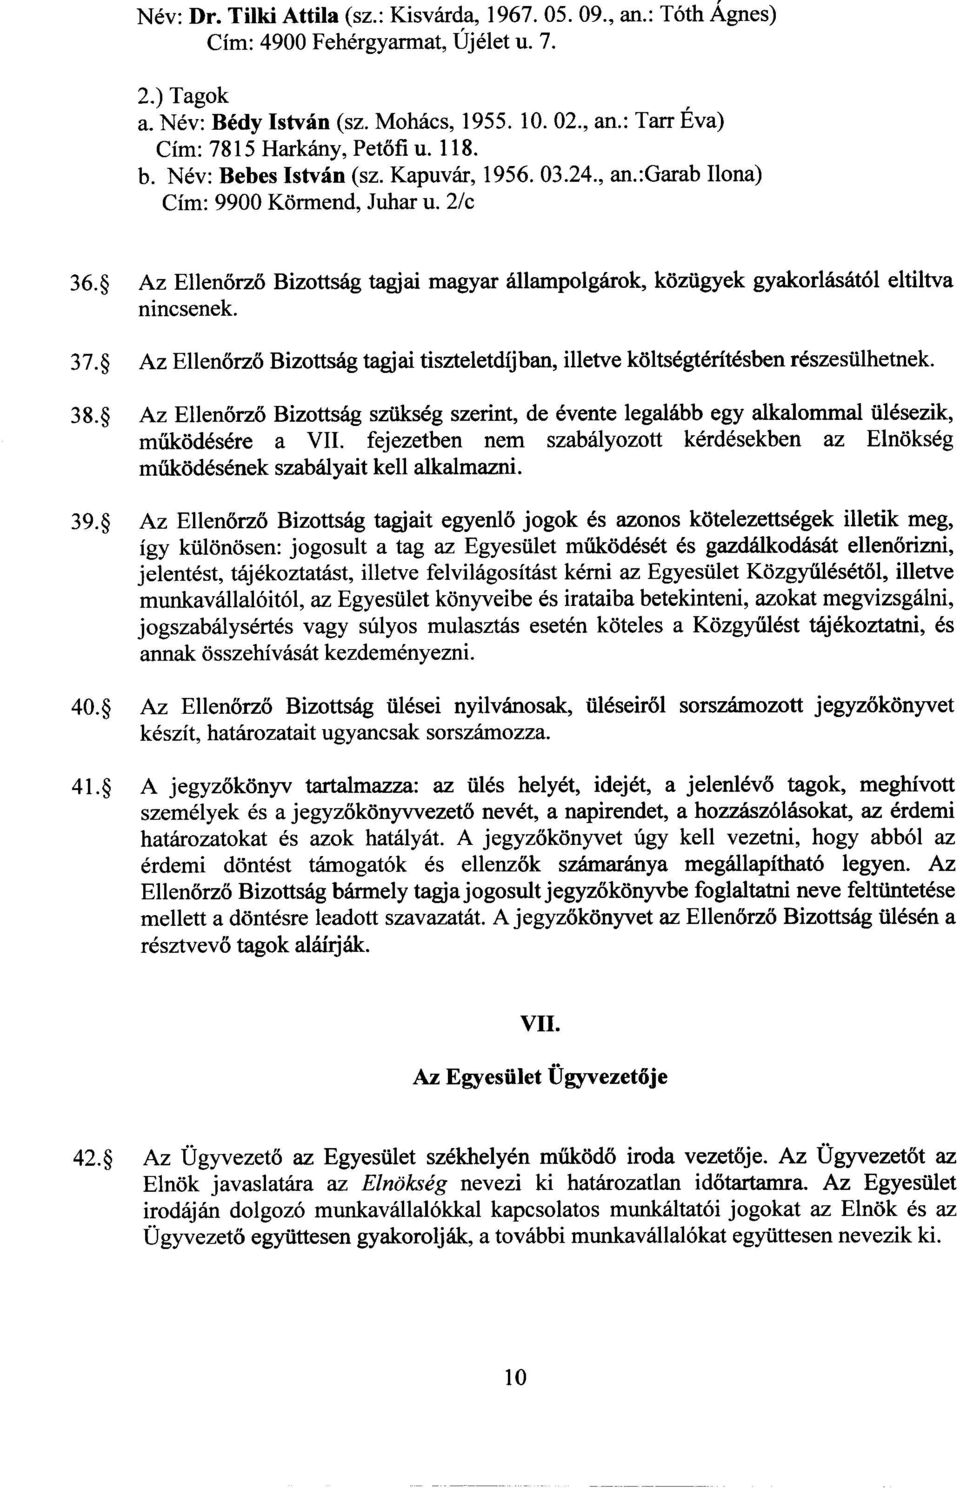 Az Ellenorzo Bizottsag tagjai magyar allampolgarok, kozugyek gyakorlasat6l eltiltva nincsenek. 38.